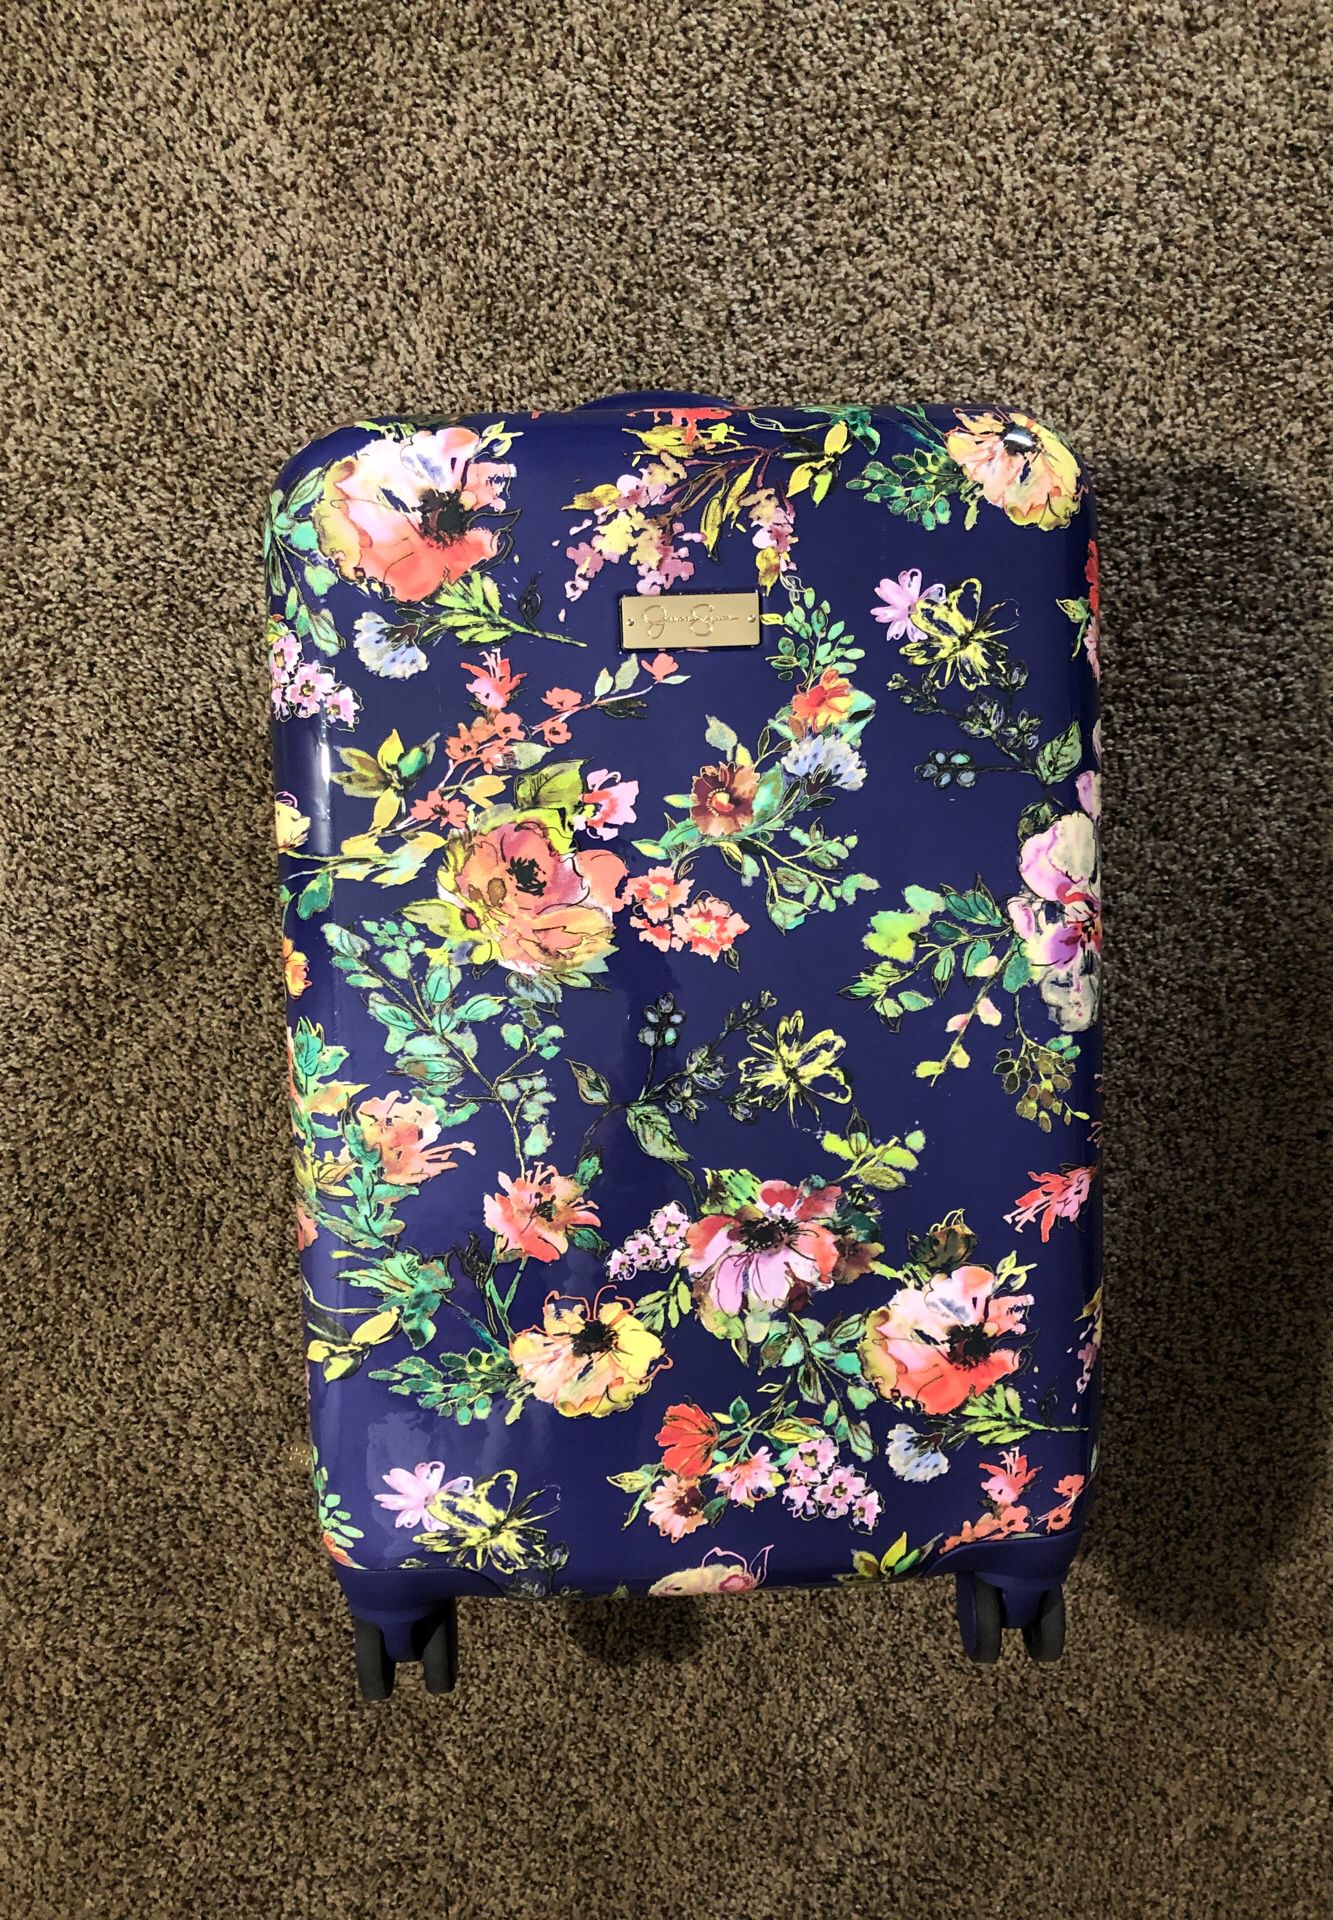 Jessica Simpson suitcase